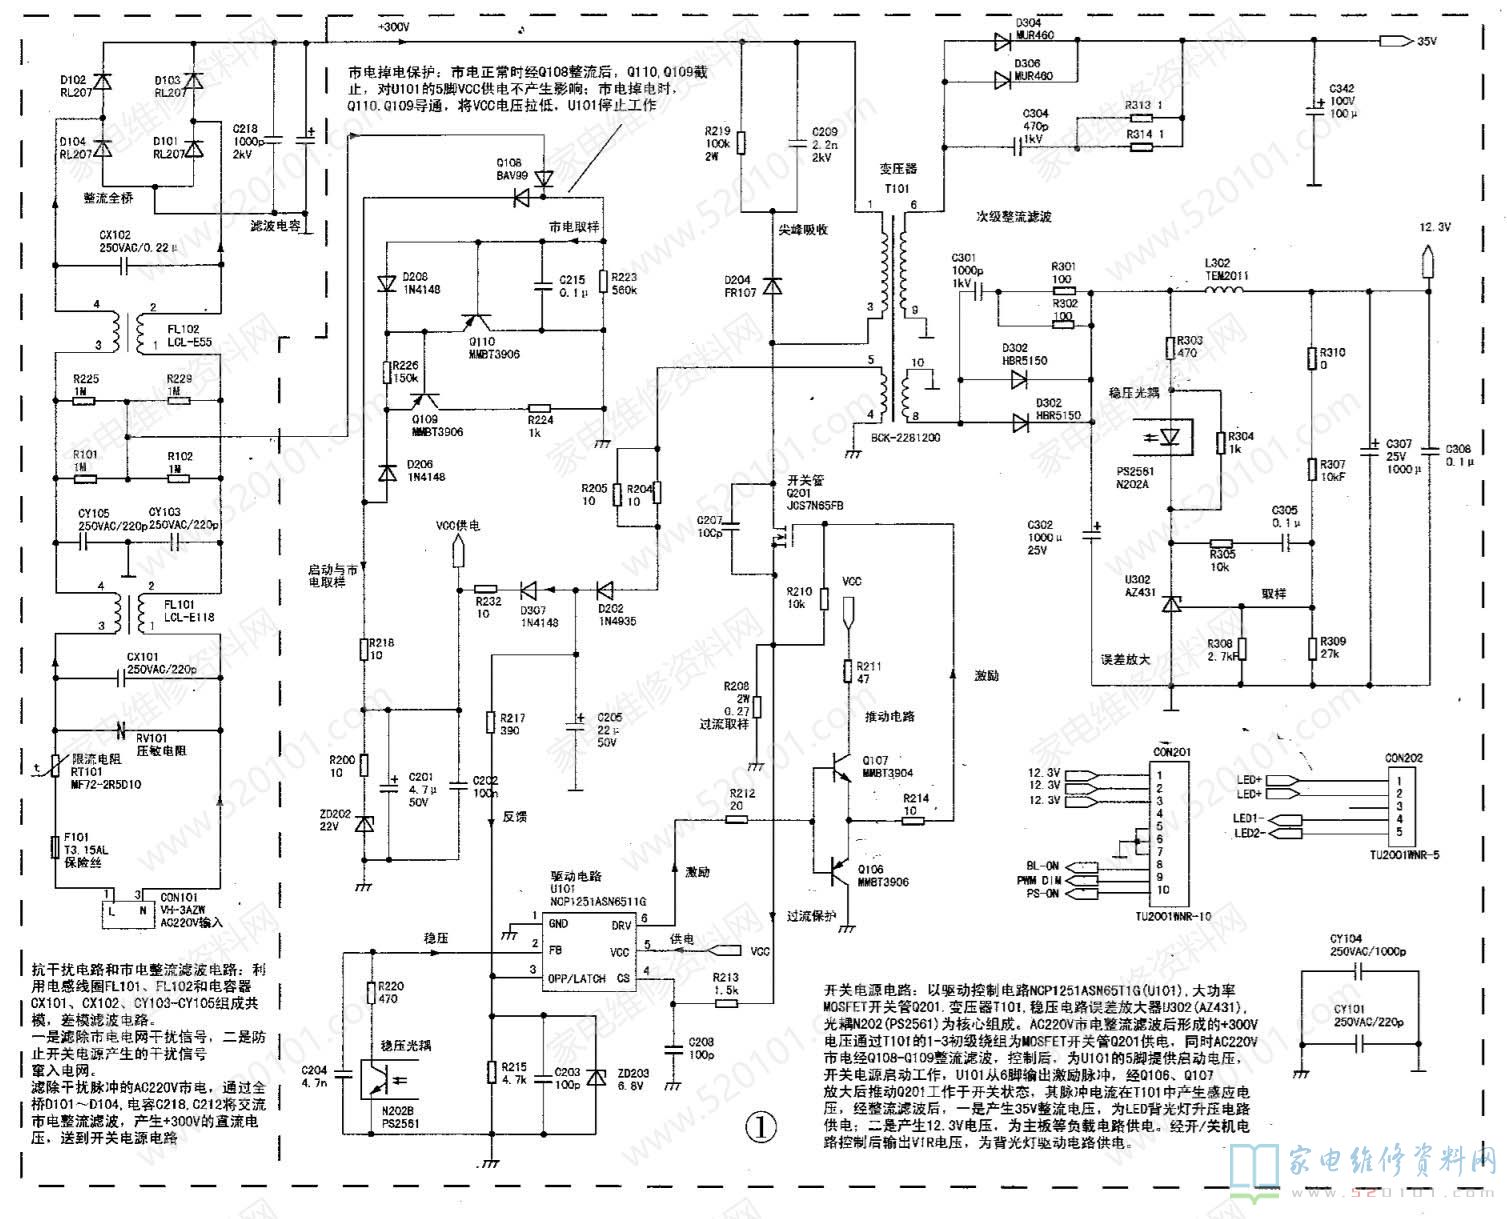 长虹HSU25D-2M8 210二合一电源板故障速修图解 第1张